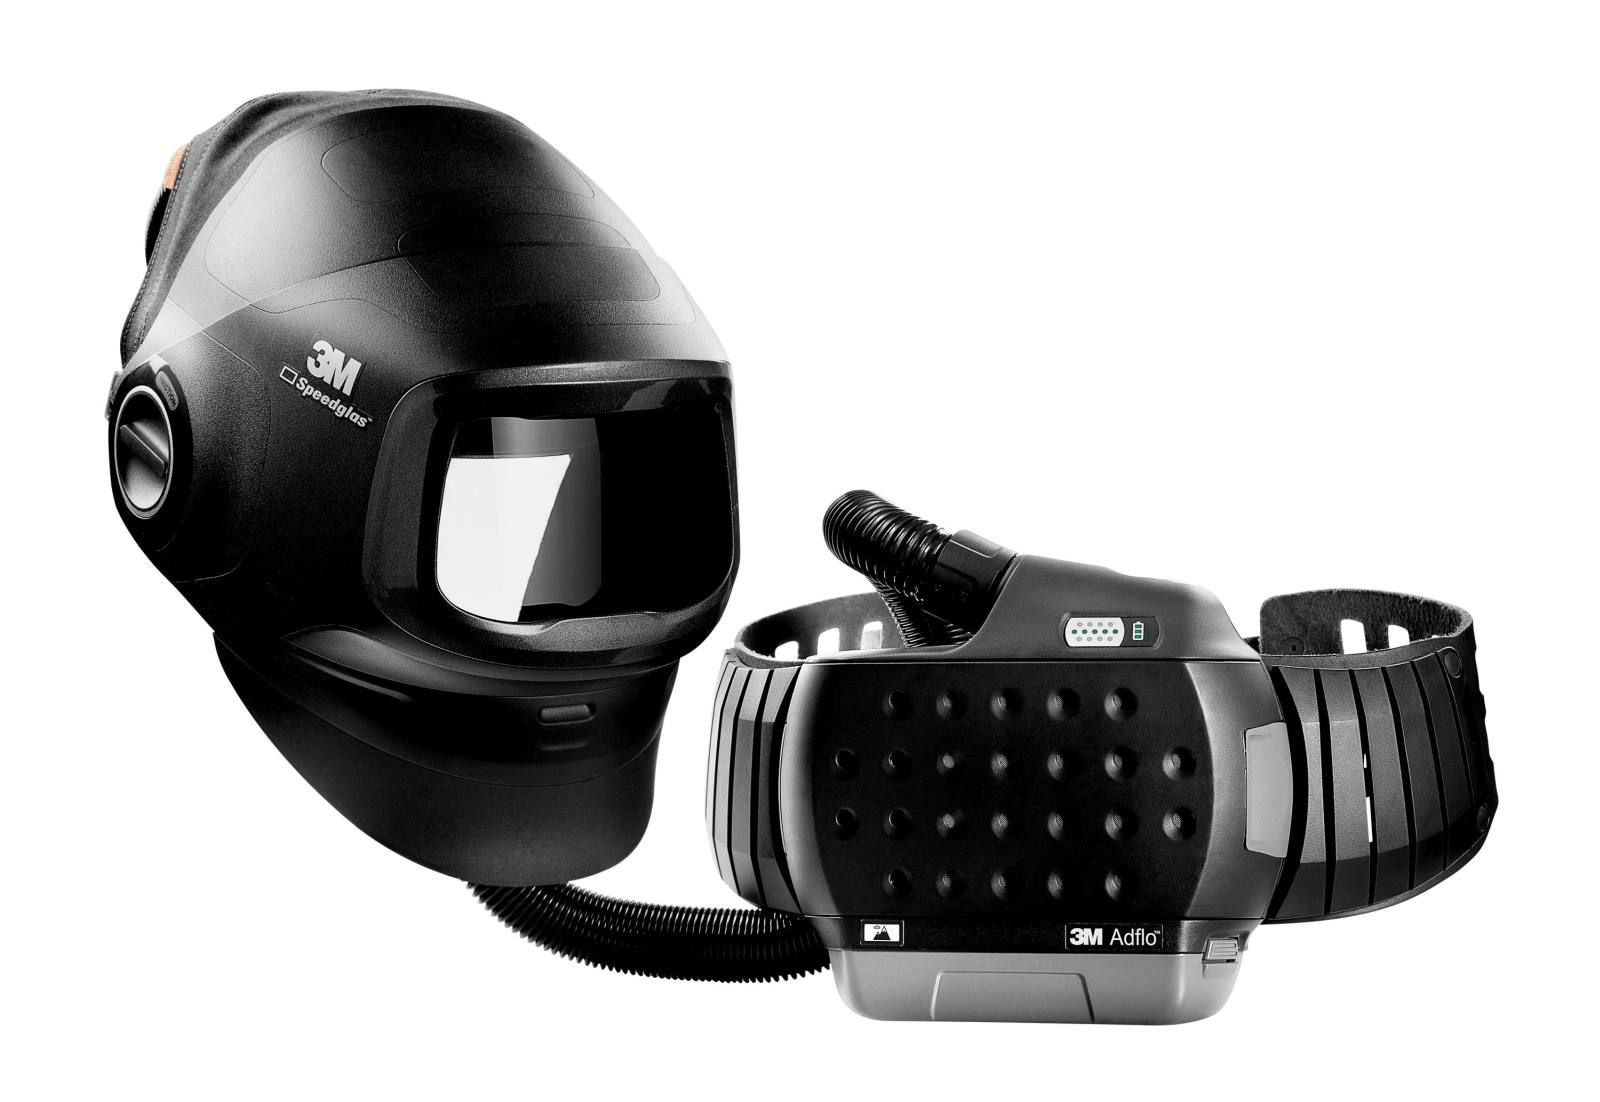 Masque de soudage haute performance 3M Speedglas G5-01 avec protection respiratoire à ventilation assistée 3M Adflo, batterie haute performance, kit de démarrage des consommables et sac de rangement, sans filtre de soudage, H617809